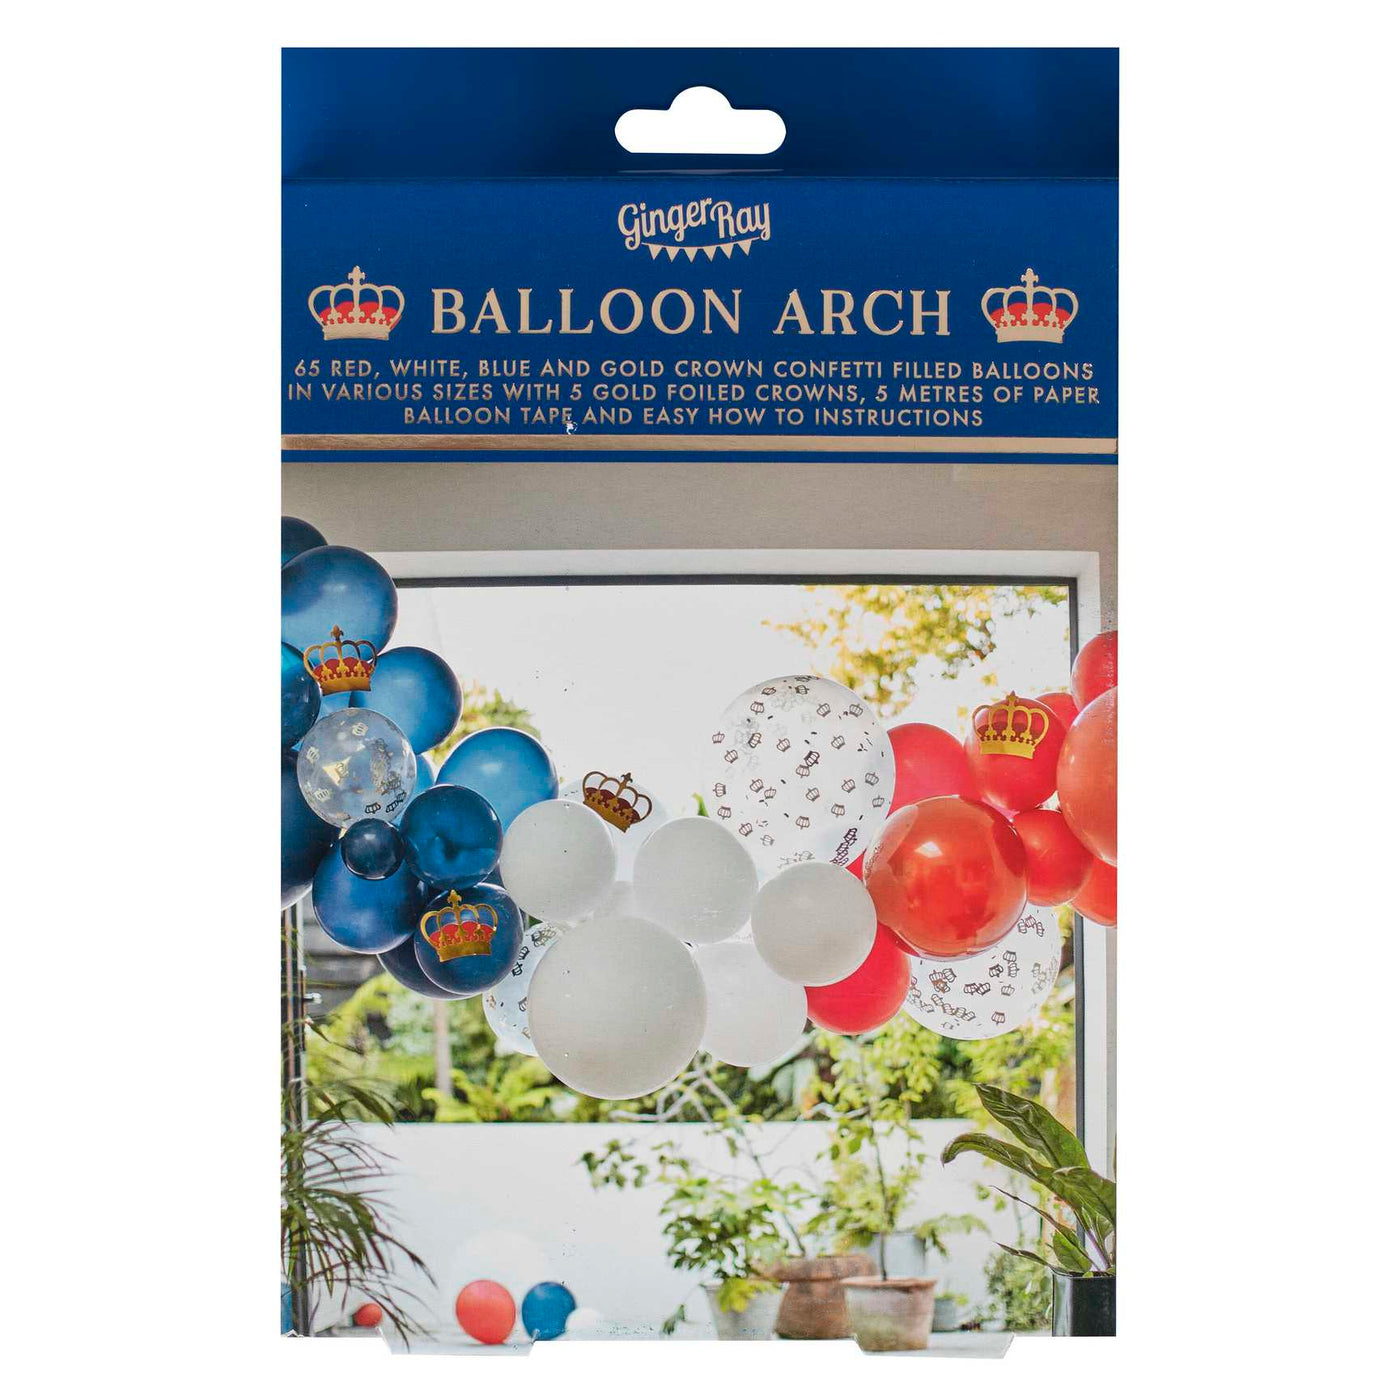 King's Coronation Balloon Arch Kit